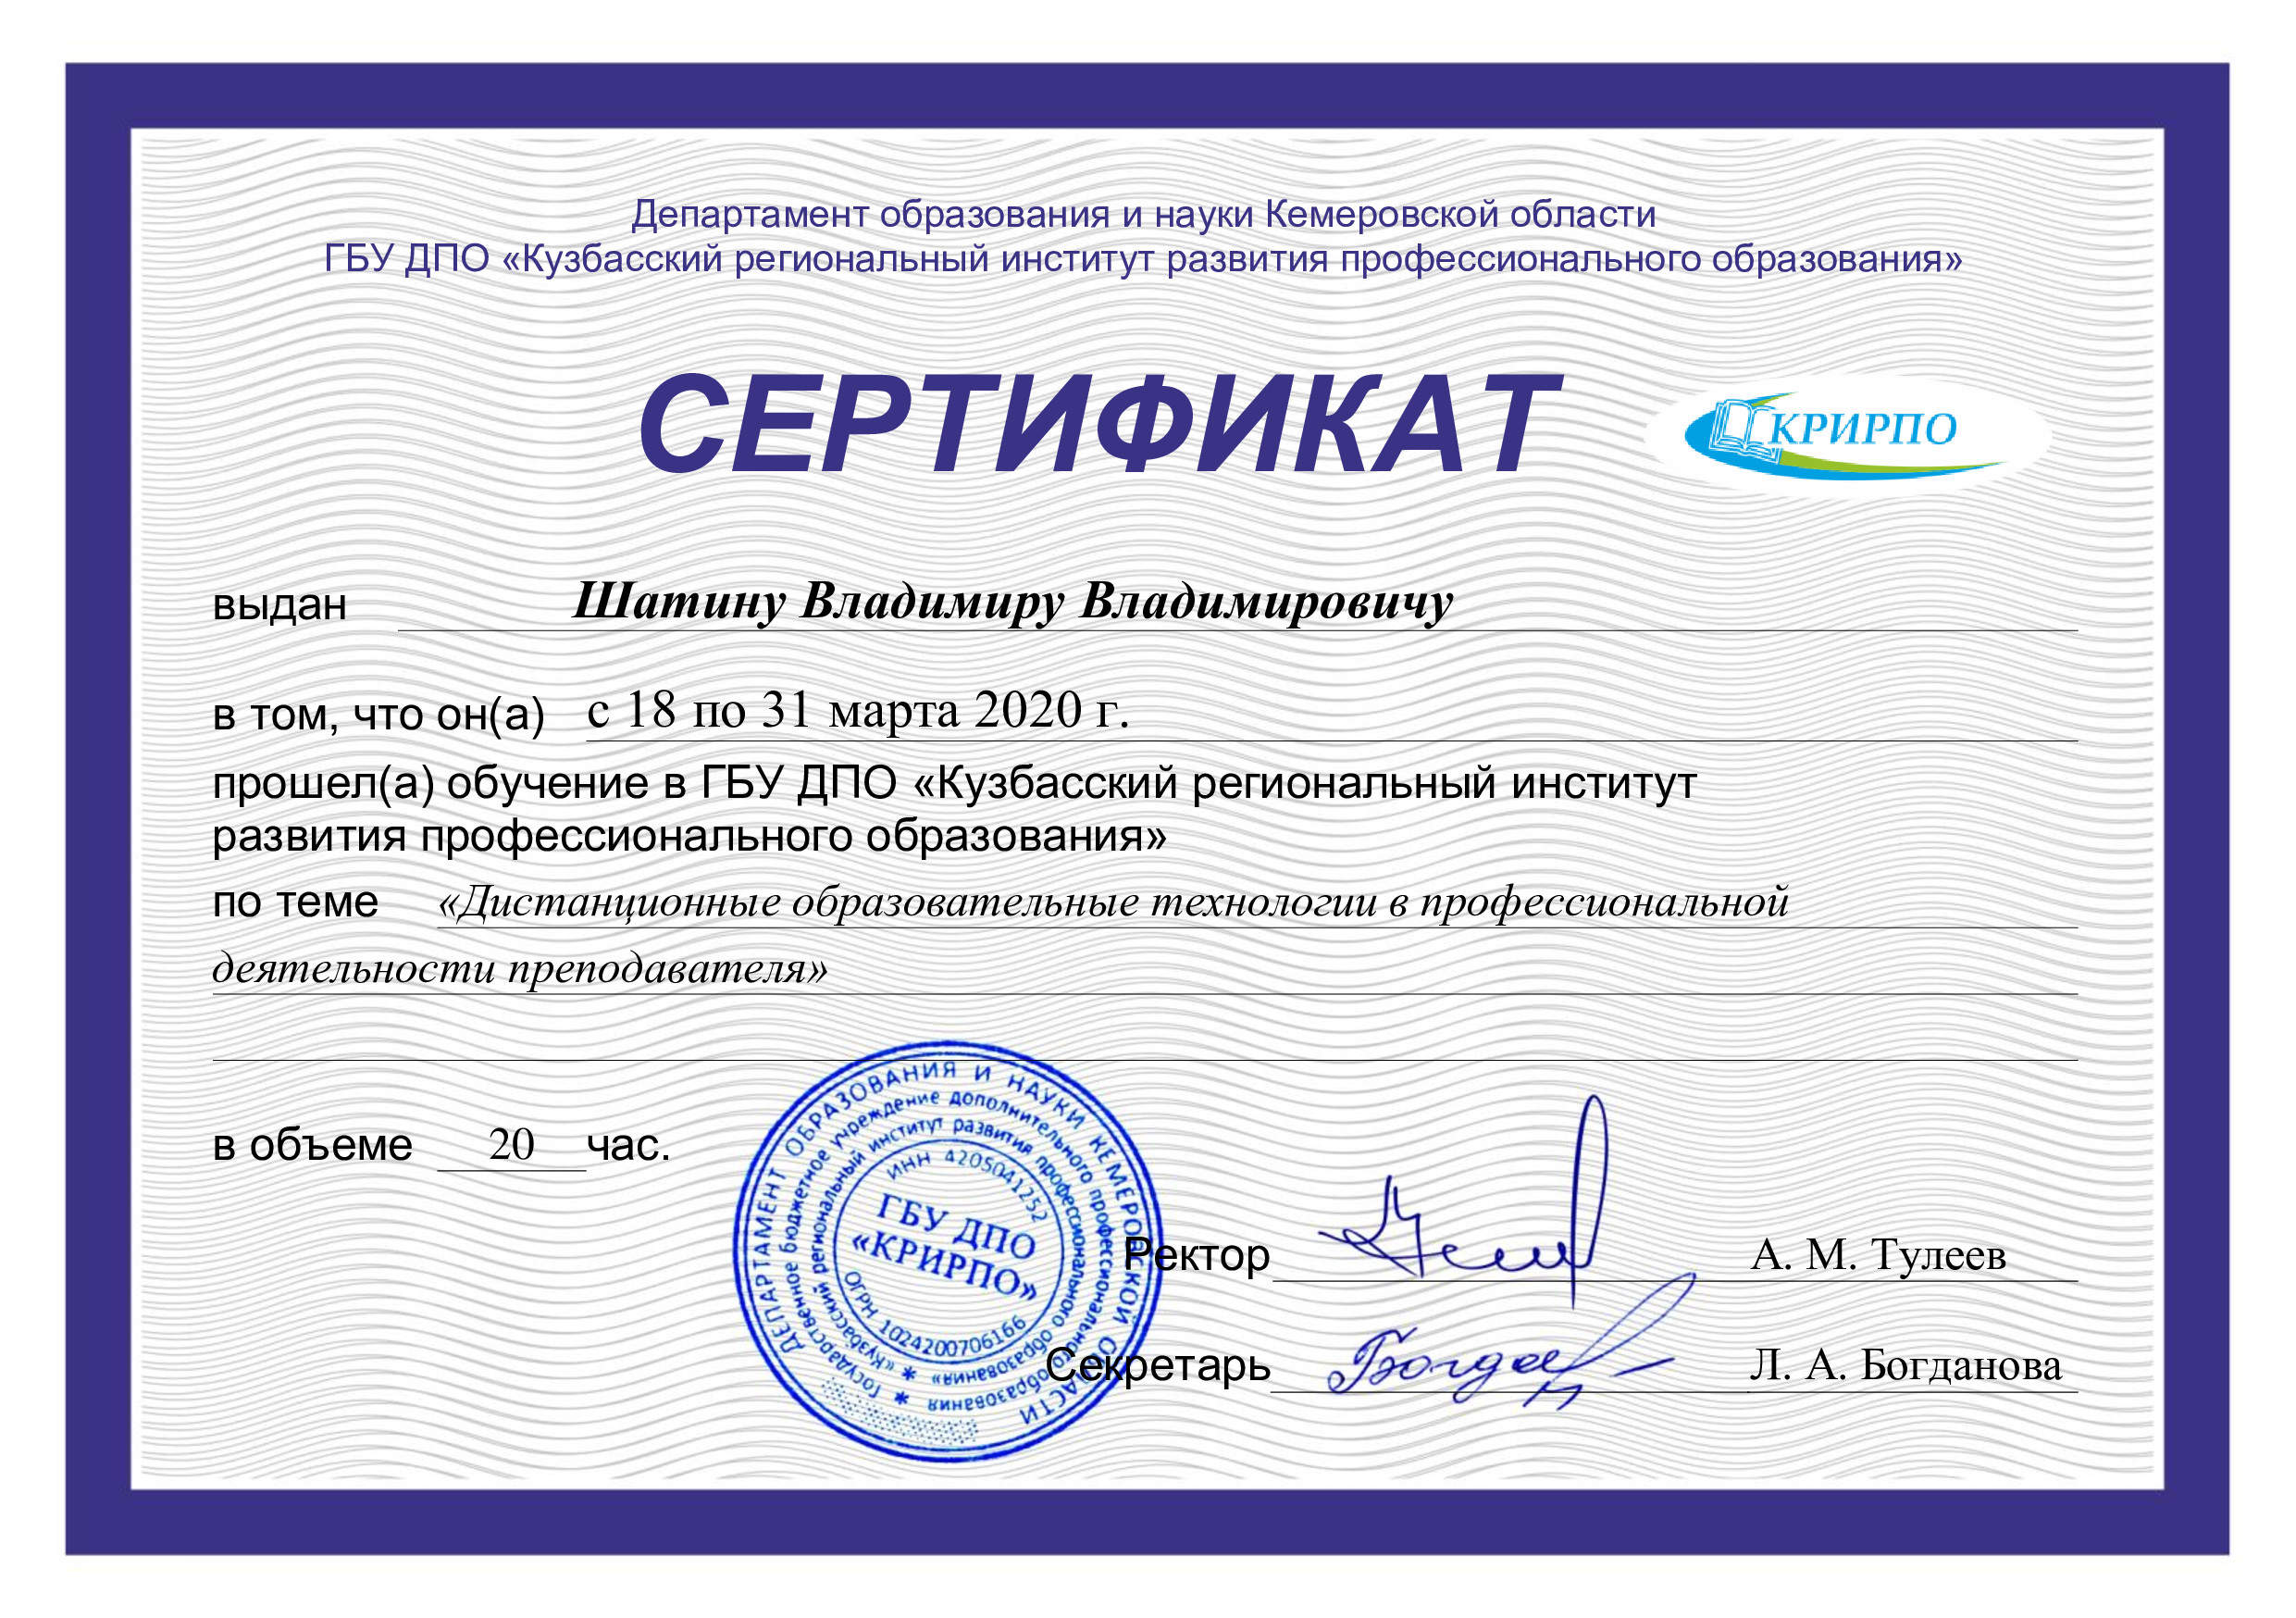 сертификат фотография москва